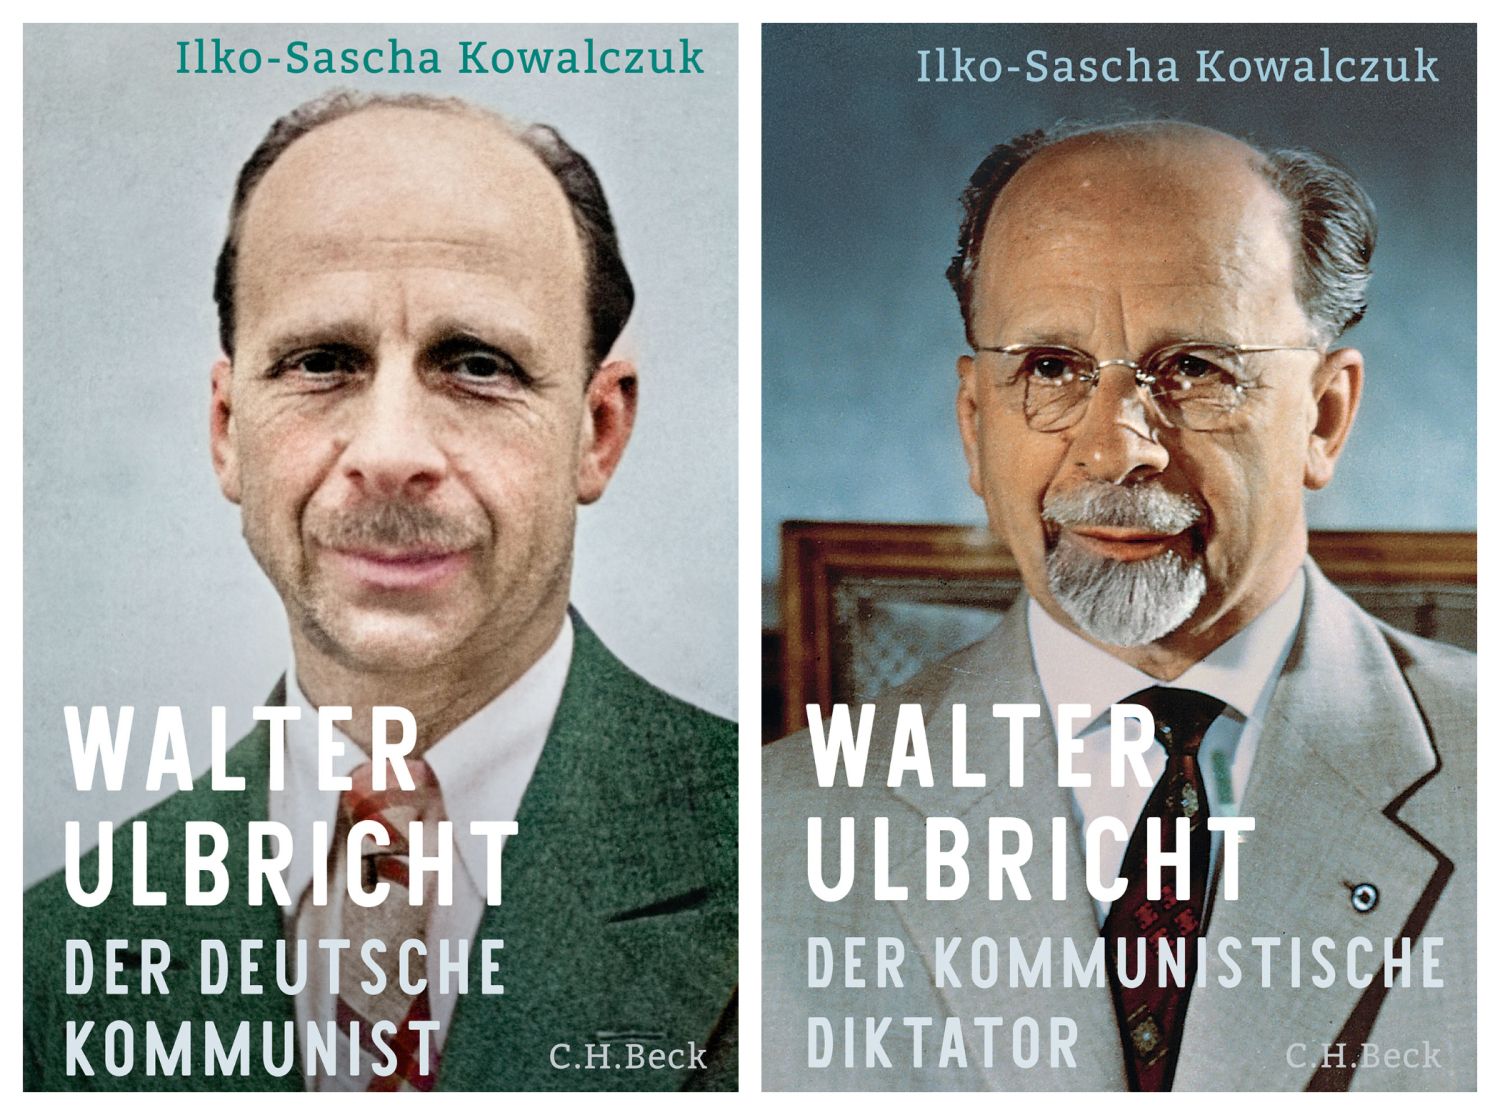 Buchcover der Biographie von Walter Ulbricht, Teil 1 und 2, des Autors Ilko-Sascha Kowalczuk